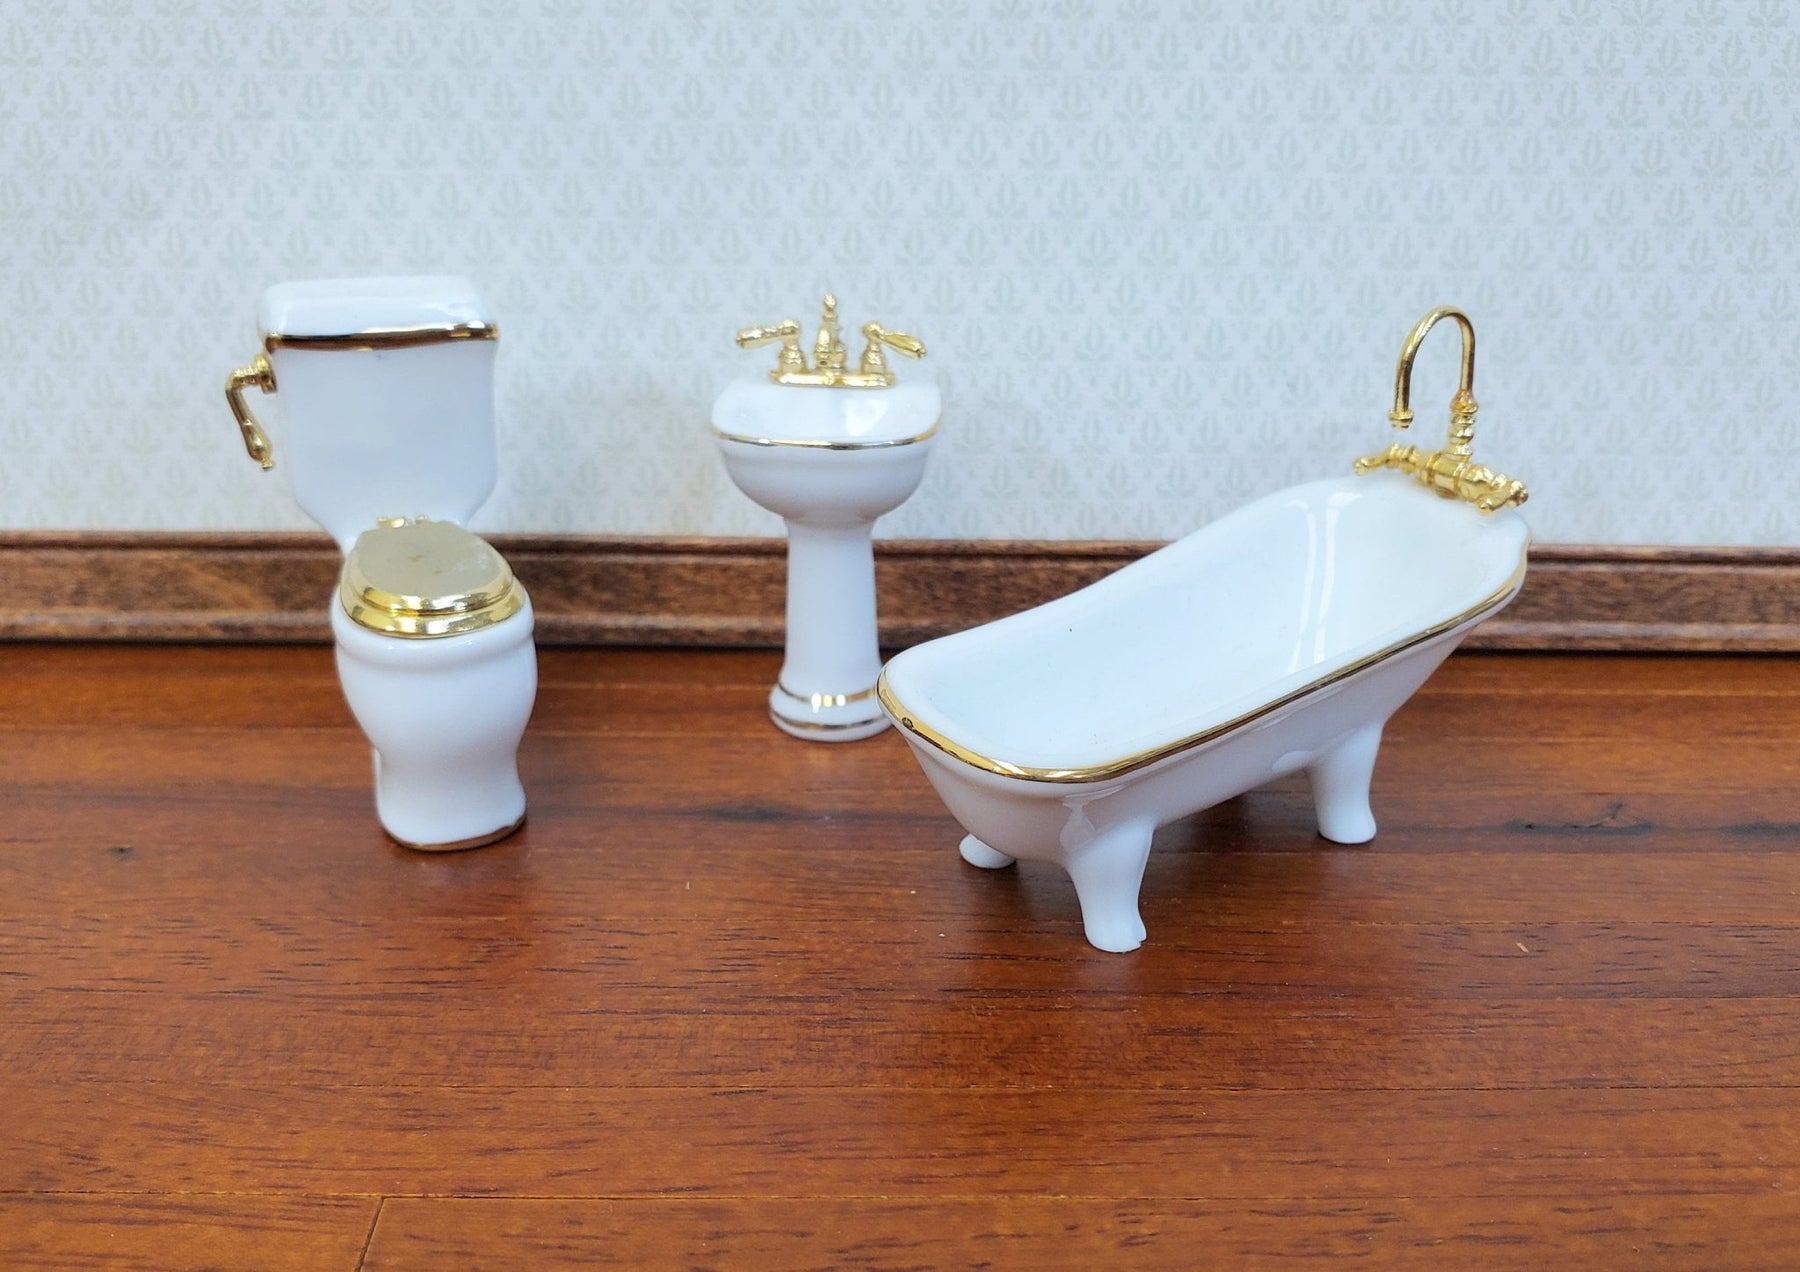 Porcelain Reutter - 1:24 Miniature Bathroom Toilet Miniatures Accents Crush Tub Set 24k Gold HALF Sink Dollhouse SCALE